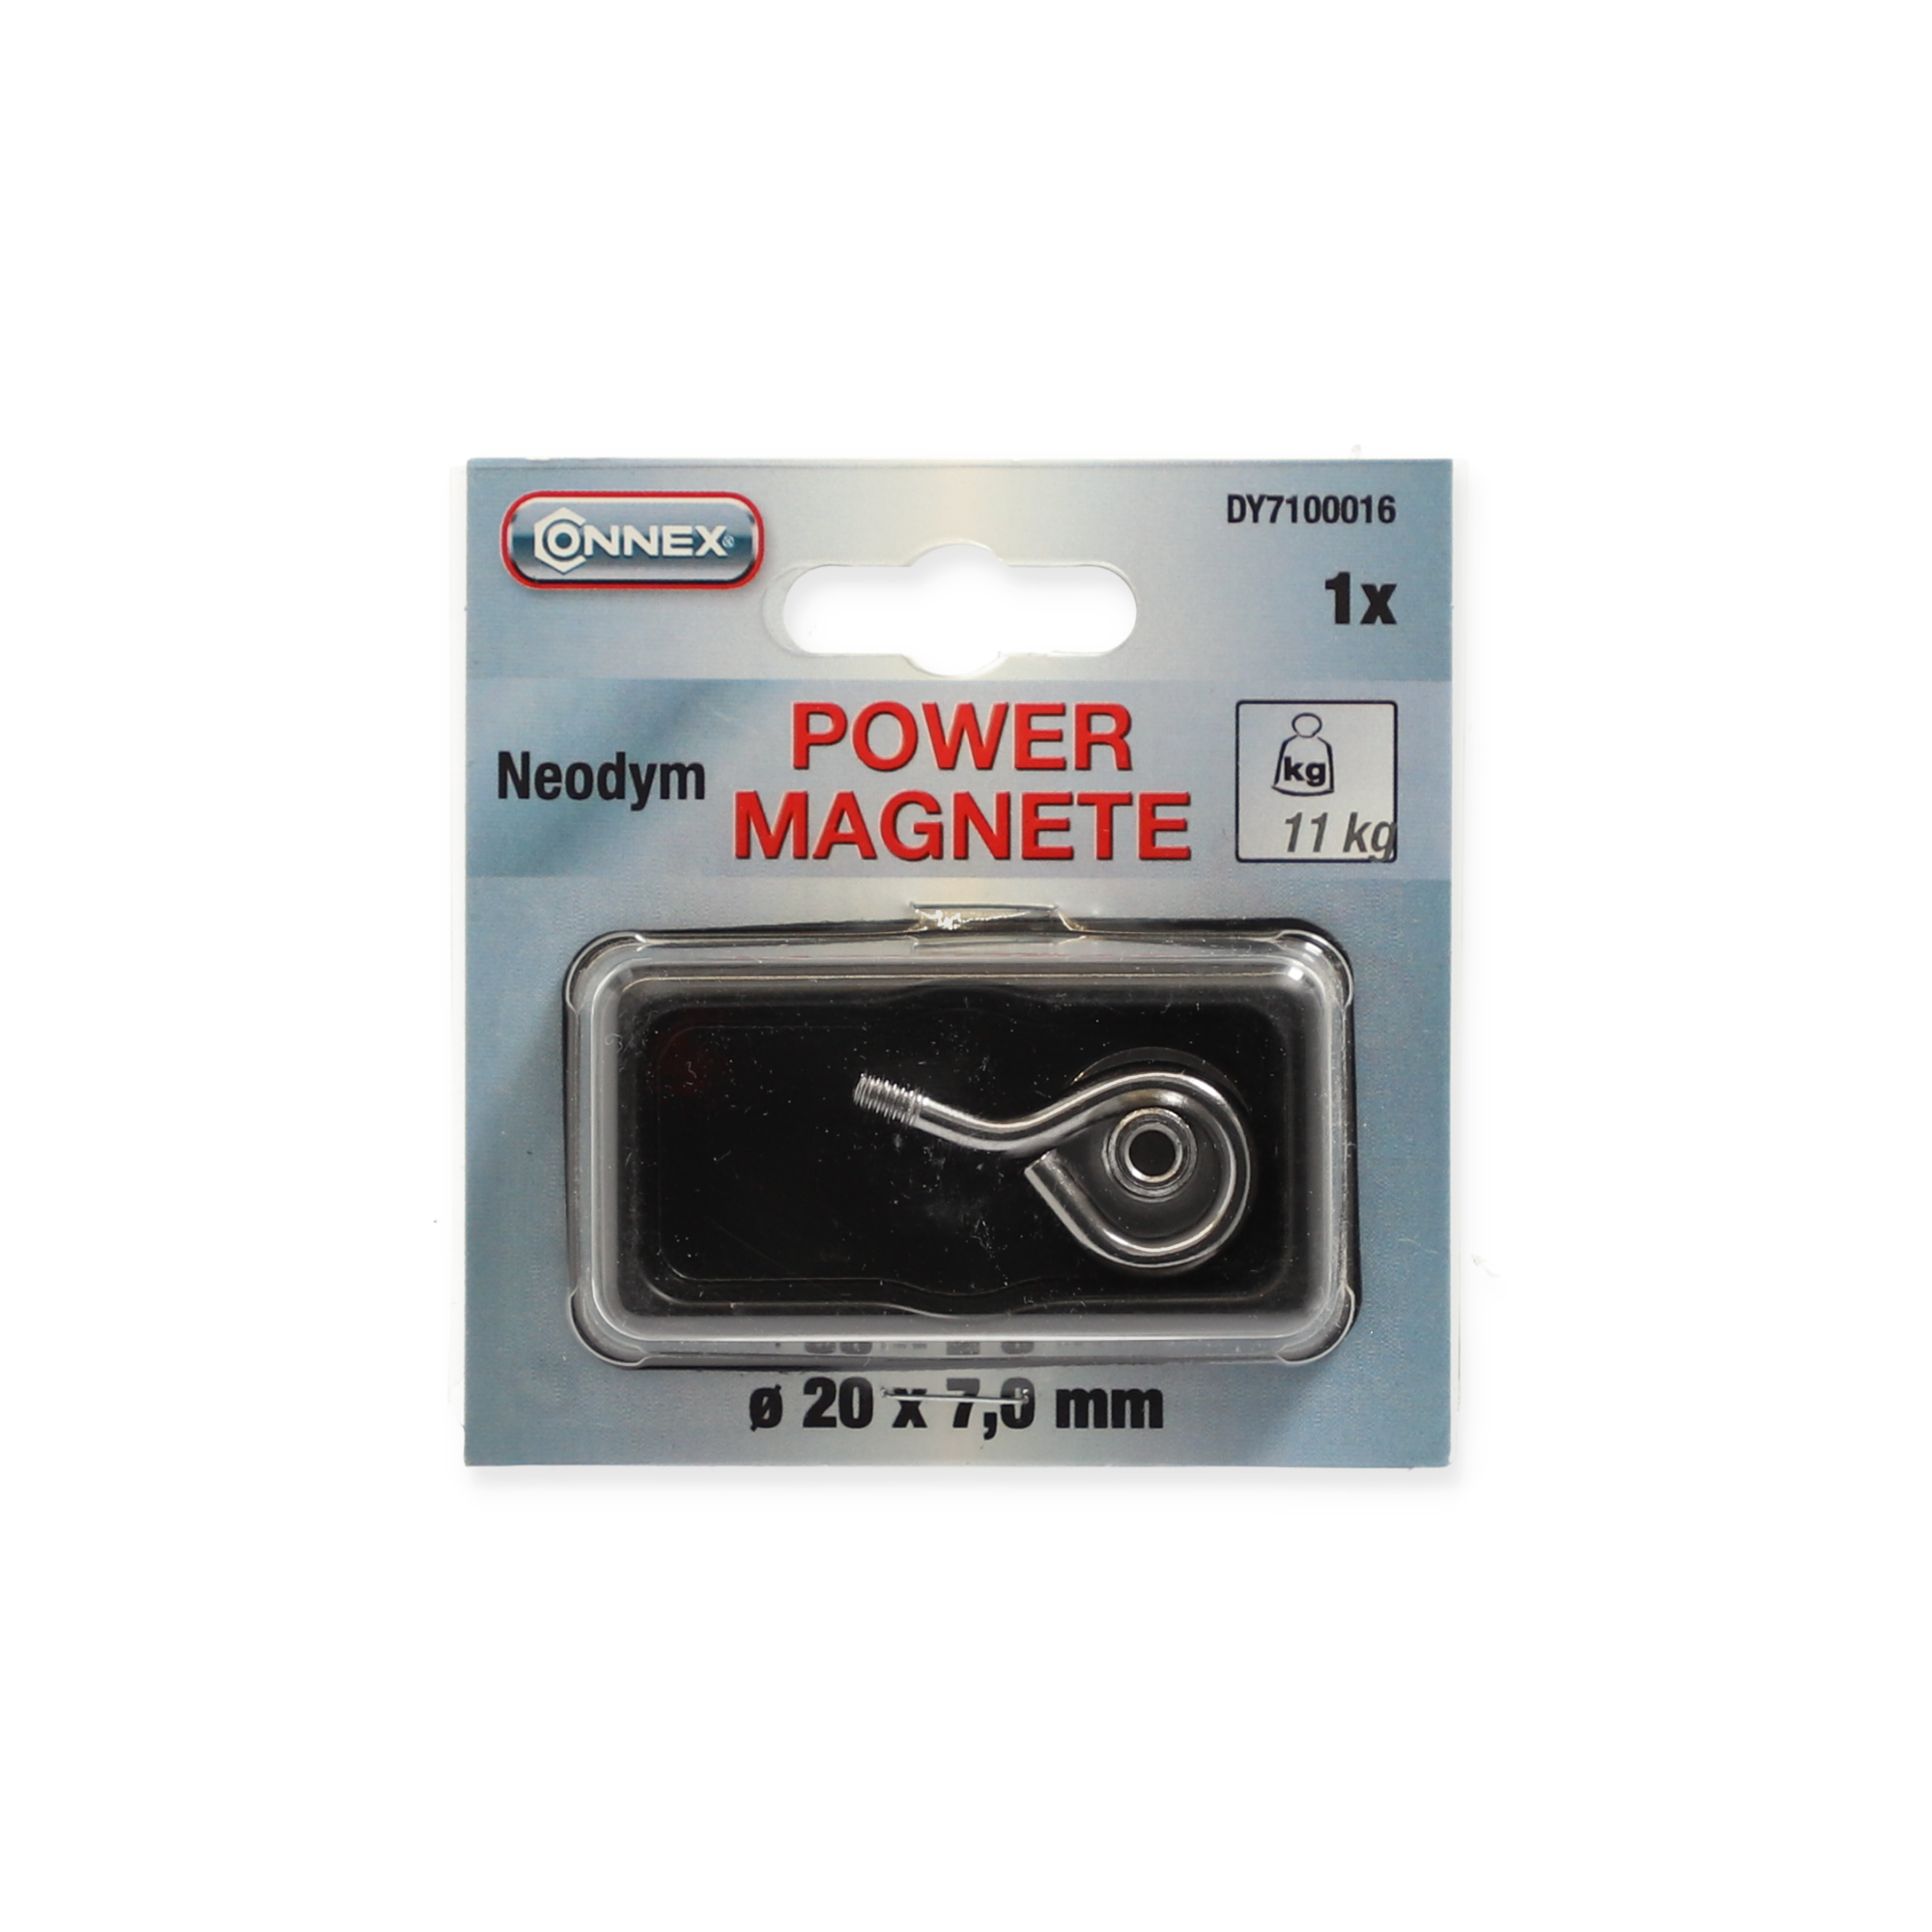 Magnet-Öse Ø 20 x 7 mm 11 kg + product picture